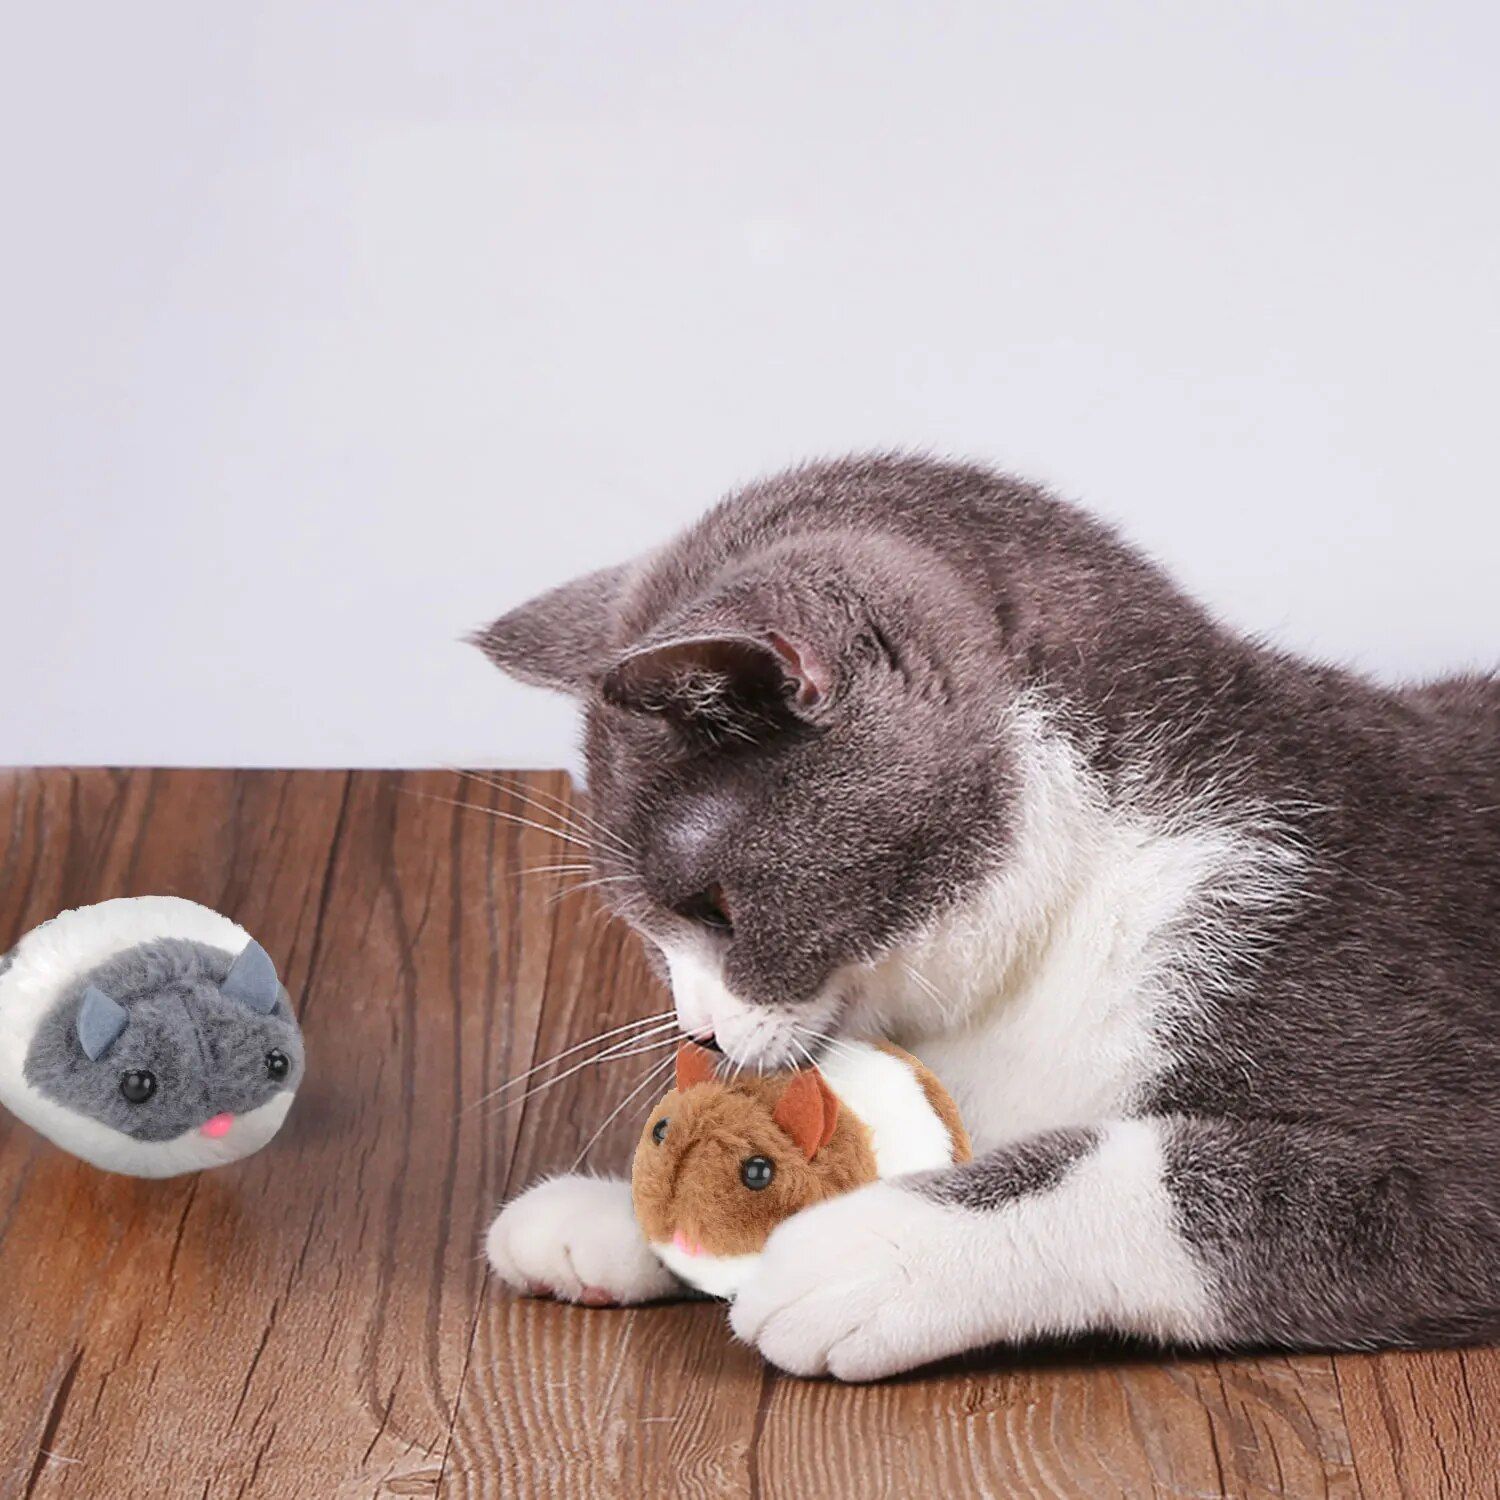 Vibrant Mice Shaped Plush Cat Toy 